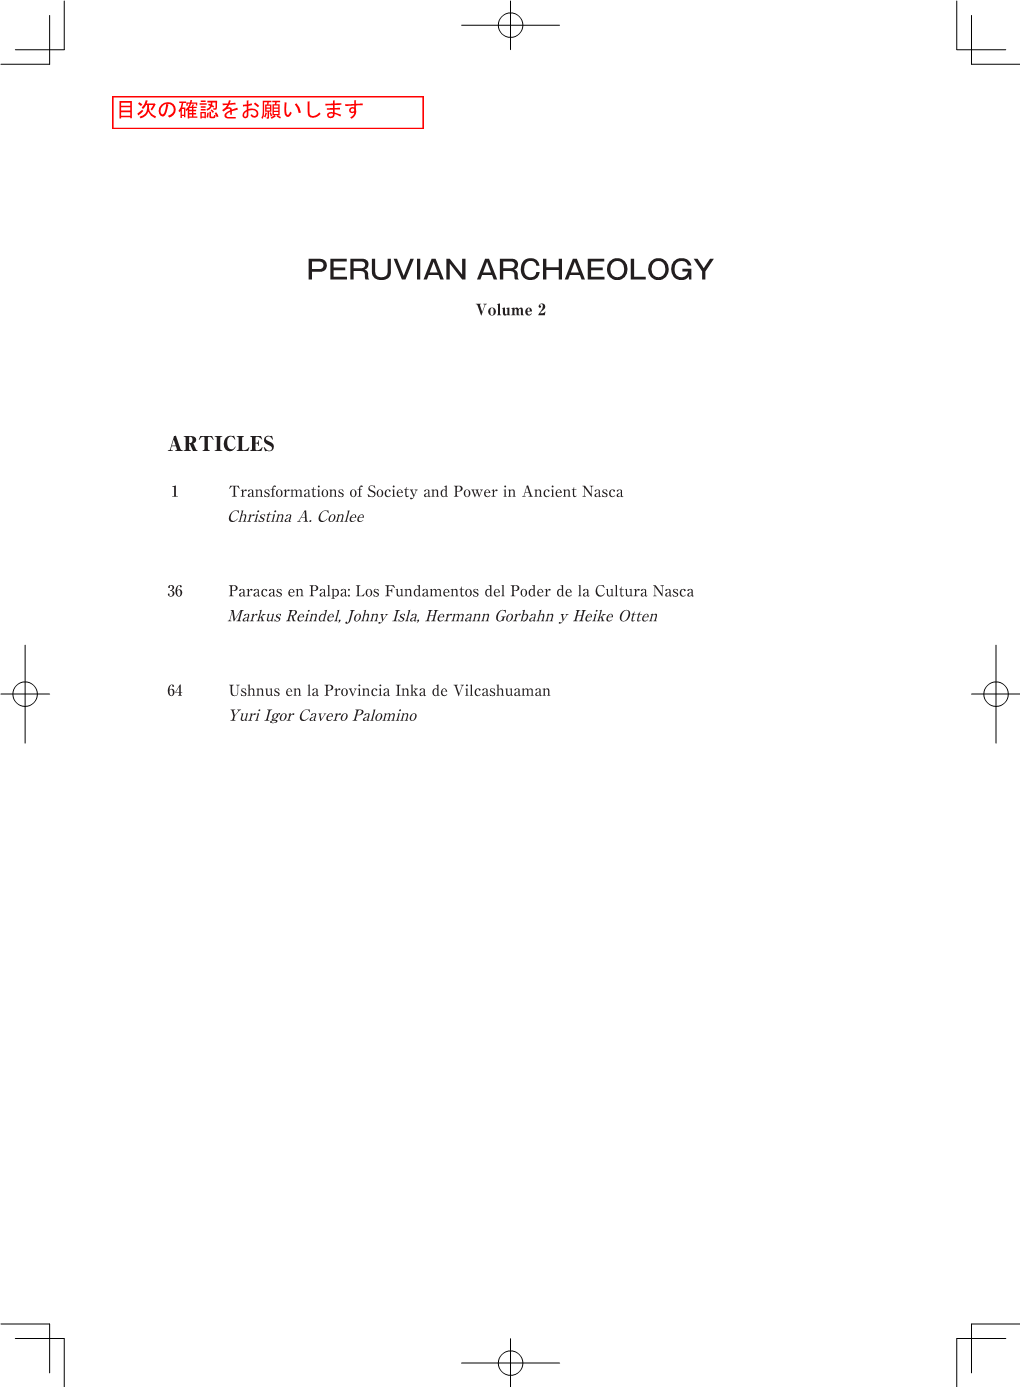 Peruvian Archaeology